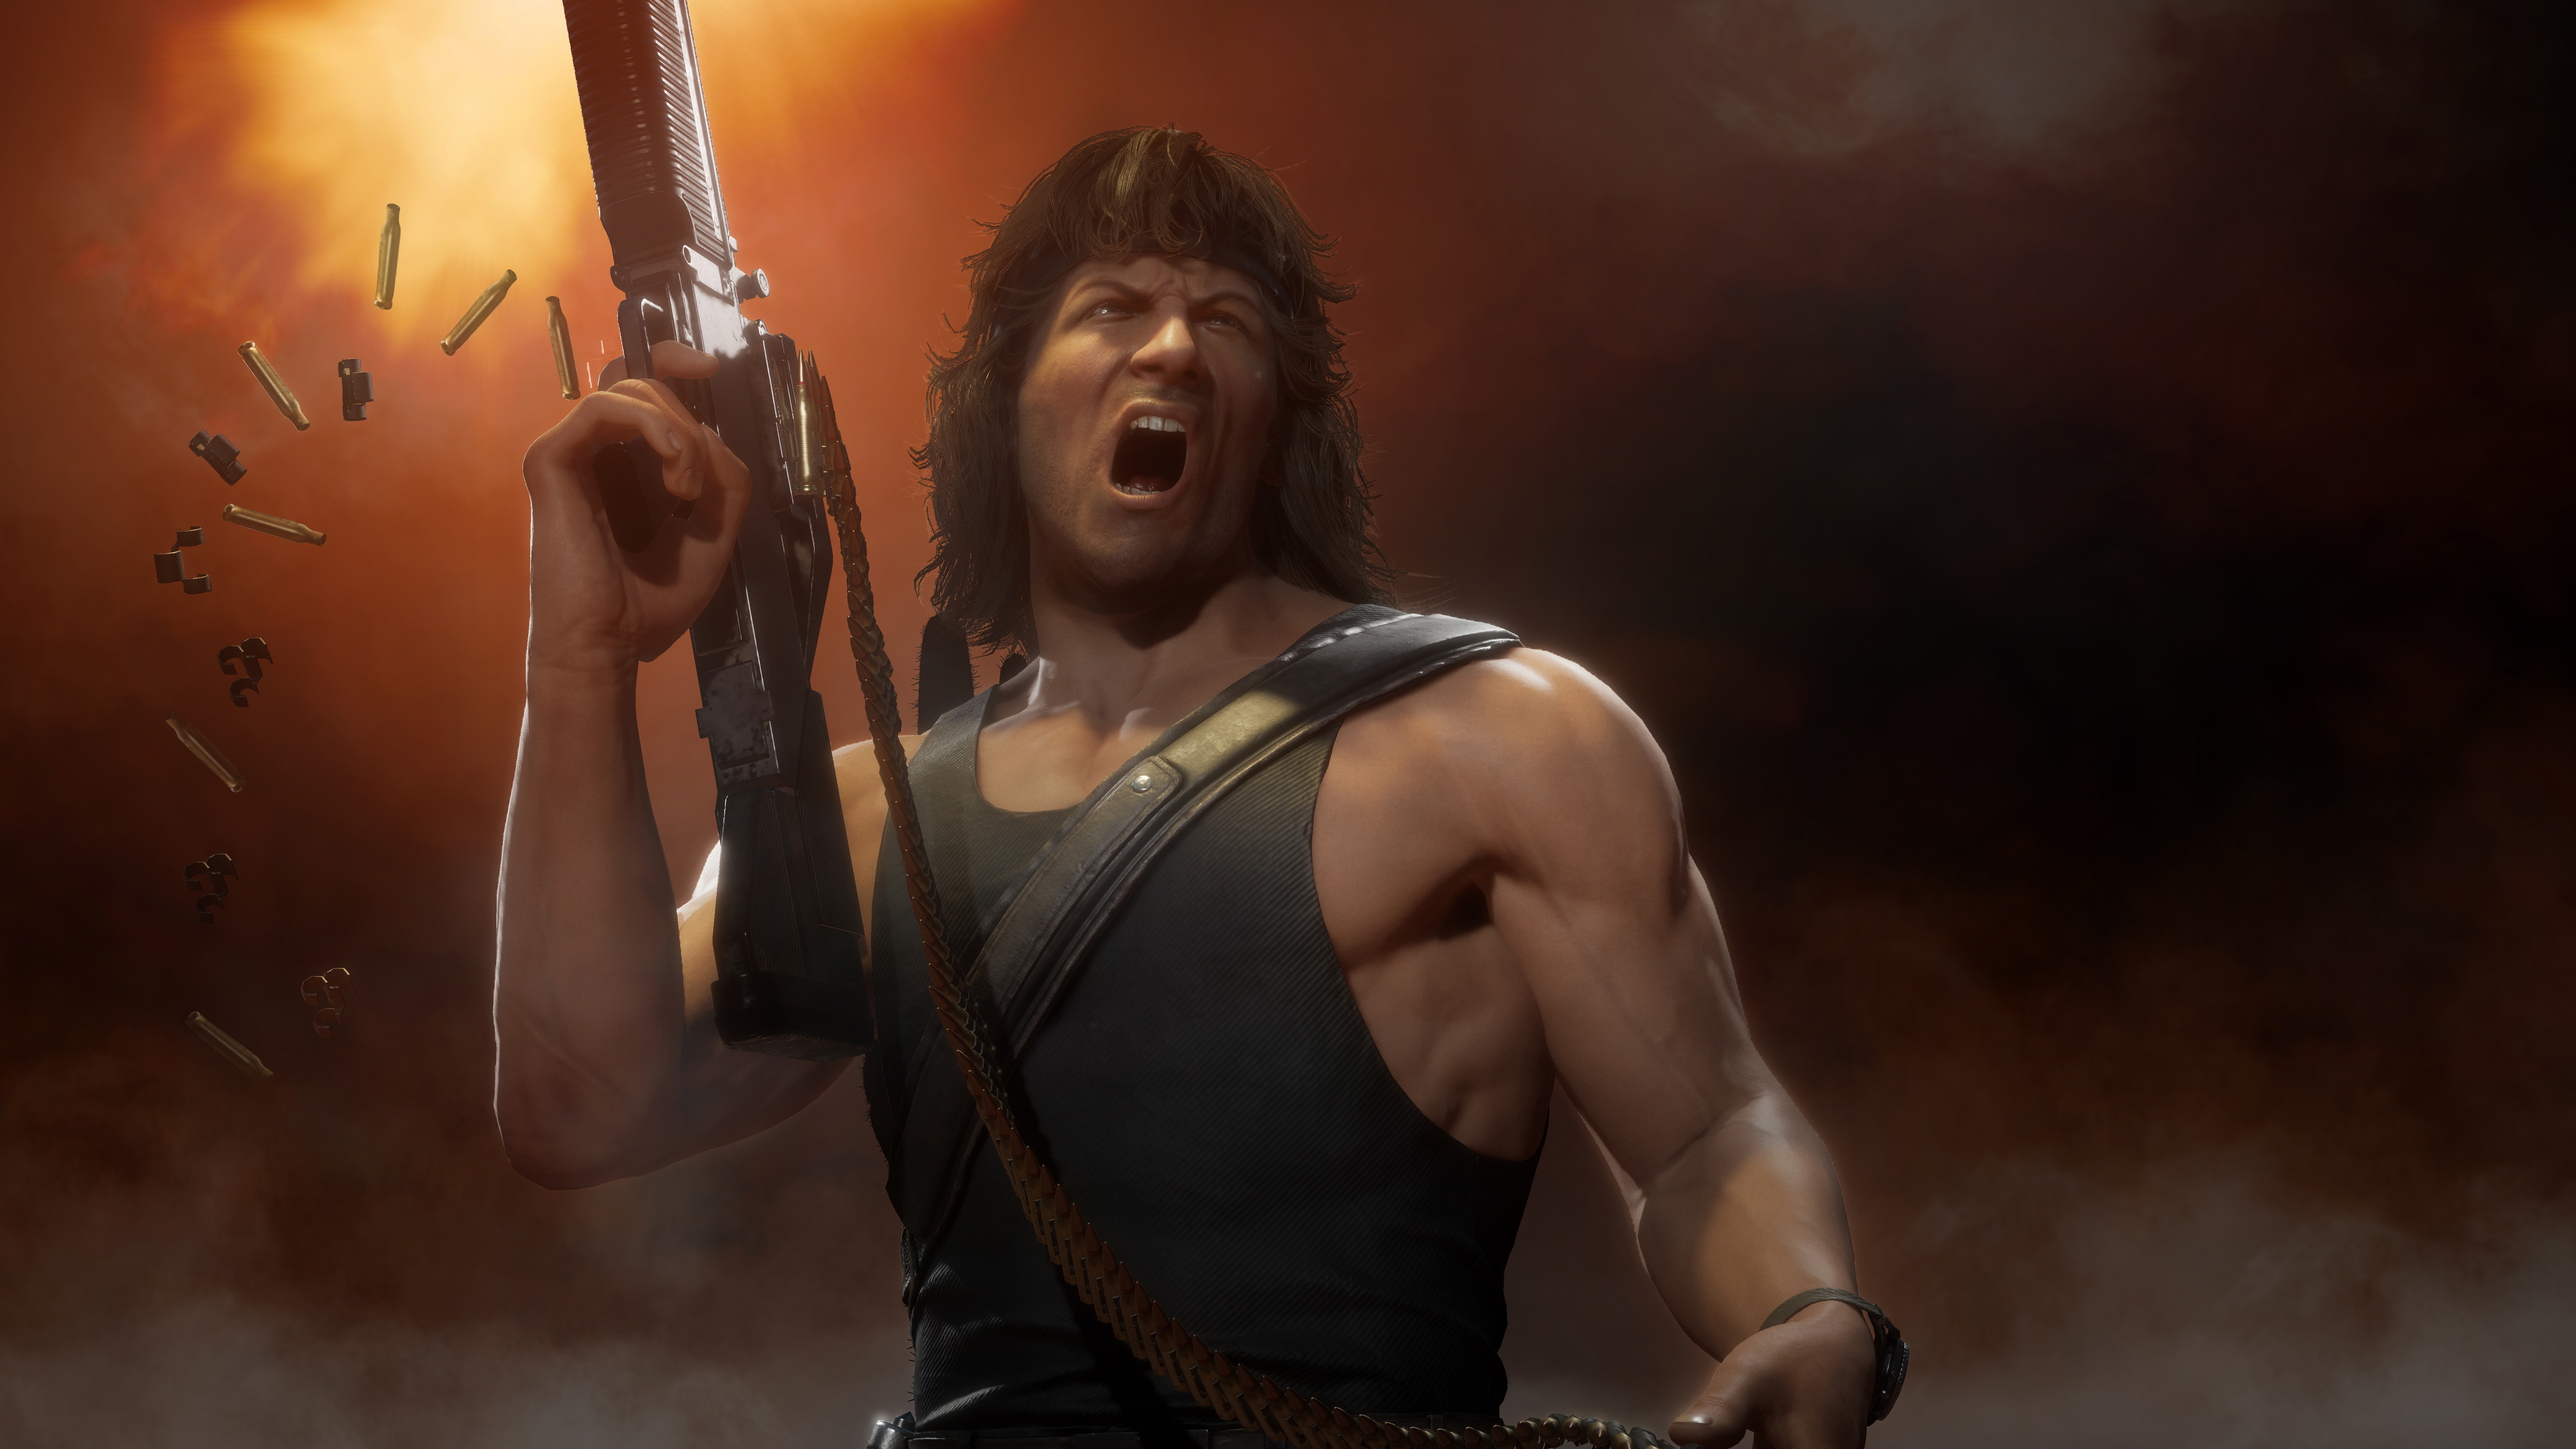 Rambo Mortal Kombat 11 Wallpaper, HD Games 4K Wallpapers 